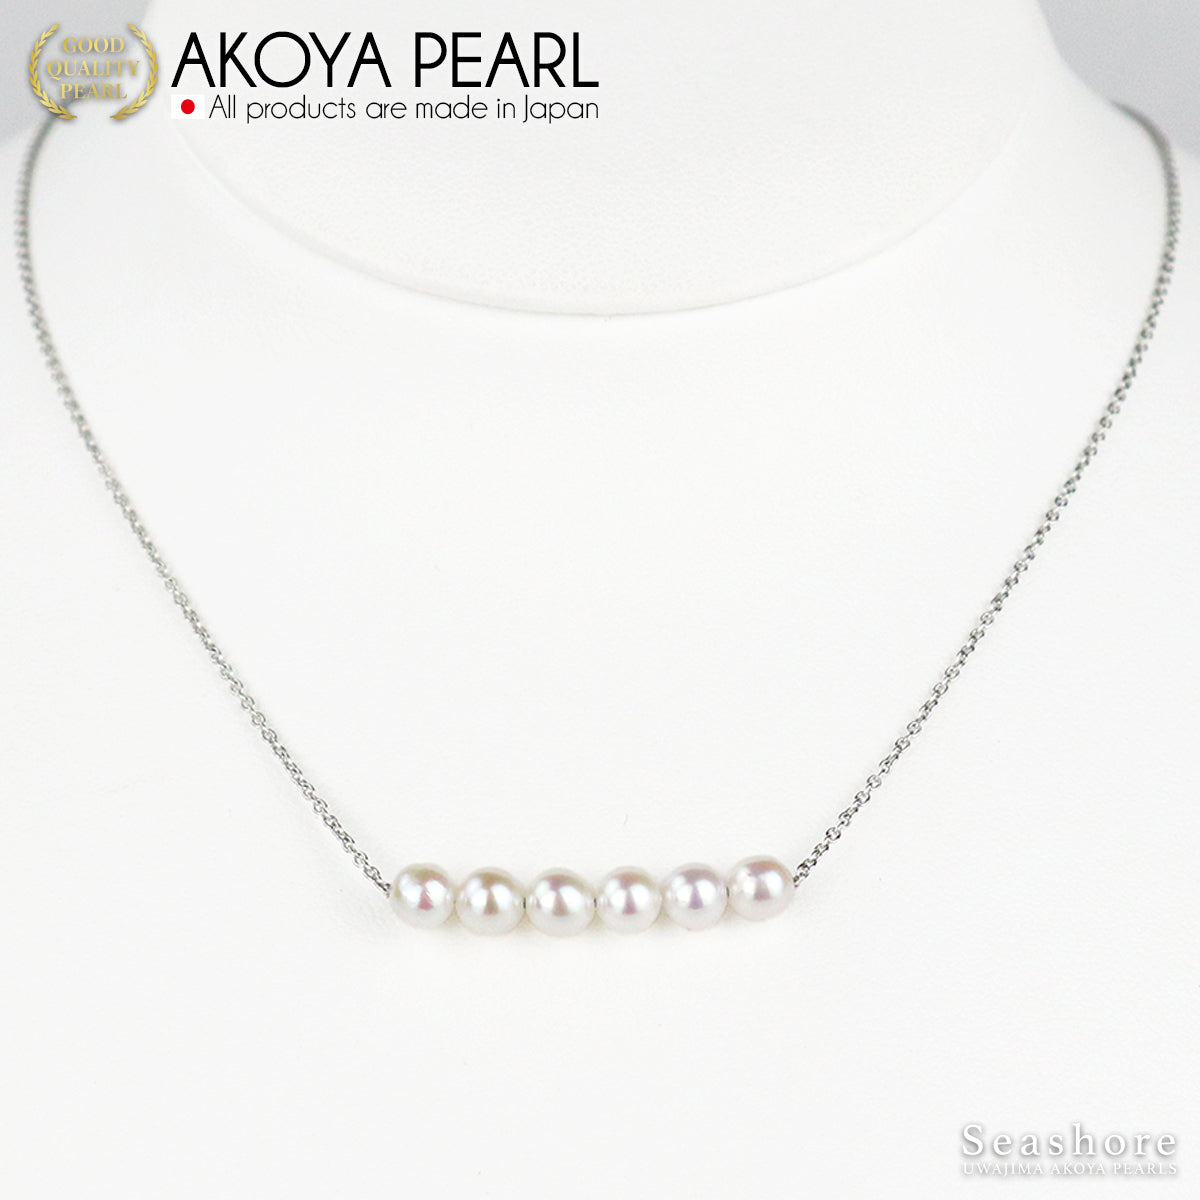 婴儿珍珠 6 珠条项链 [4.5-5.0mm] SV925 Akoya 珍珠 (3838)